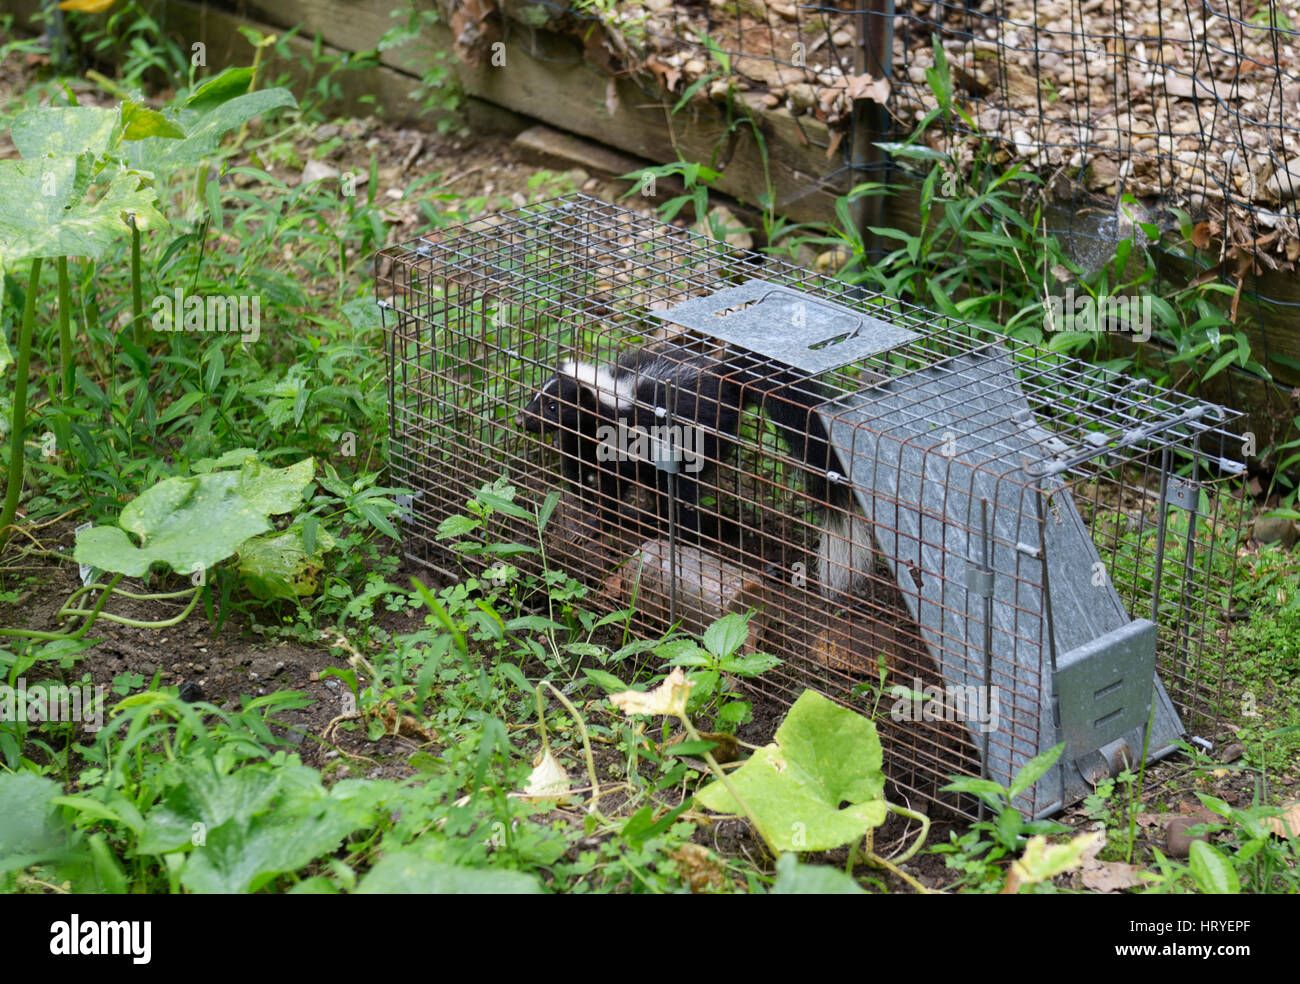 Skunk catturati nella trappola Havahart in giardino Foto Stock